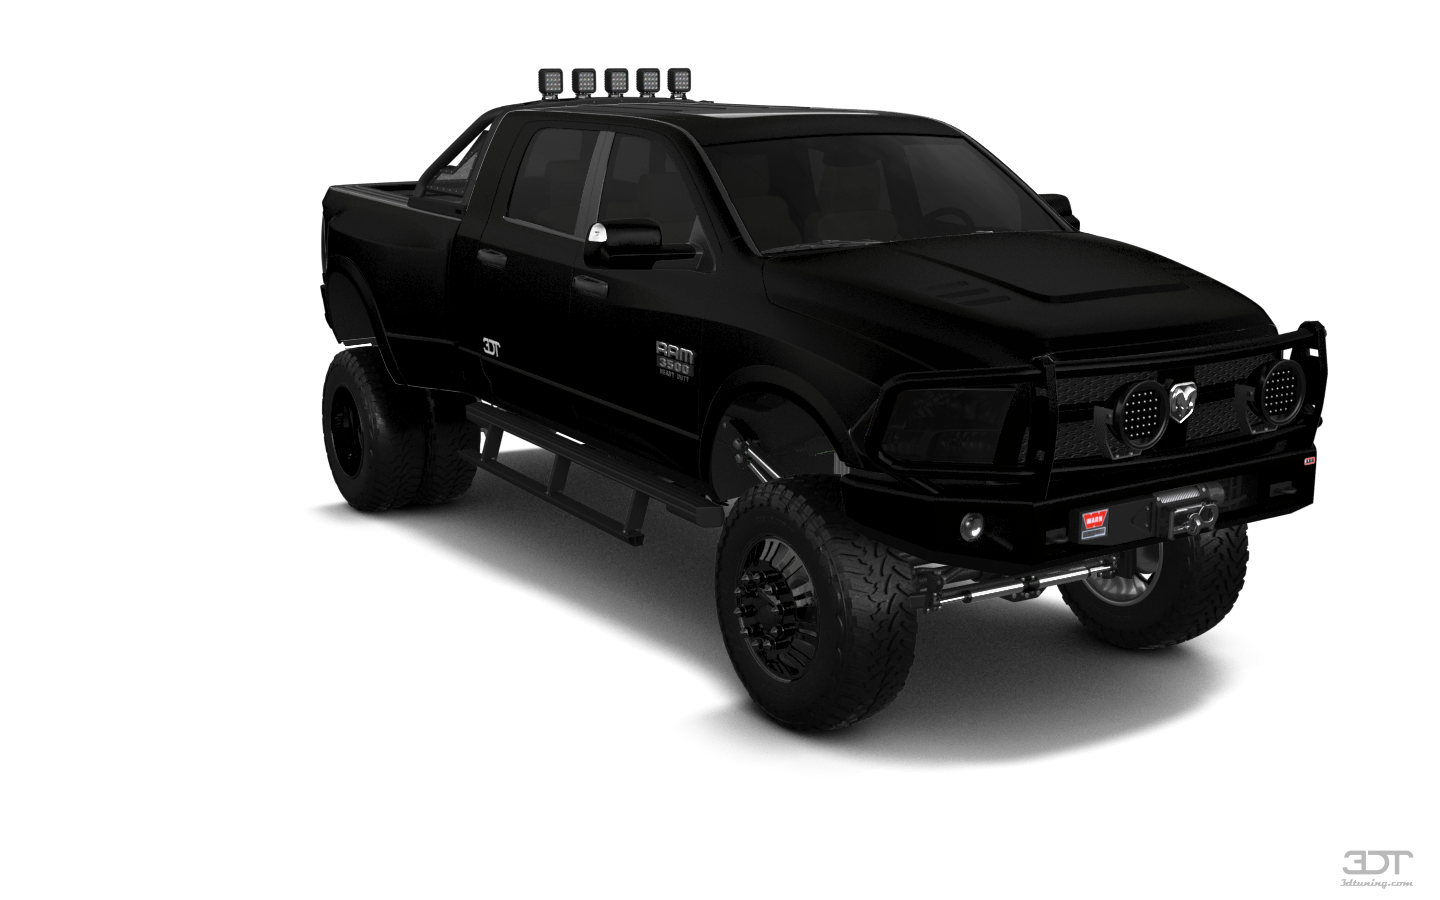 Dodge Ram 3500 4 Door Truck 2014